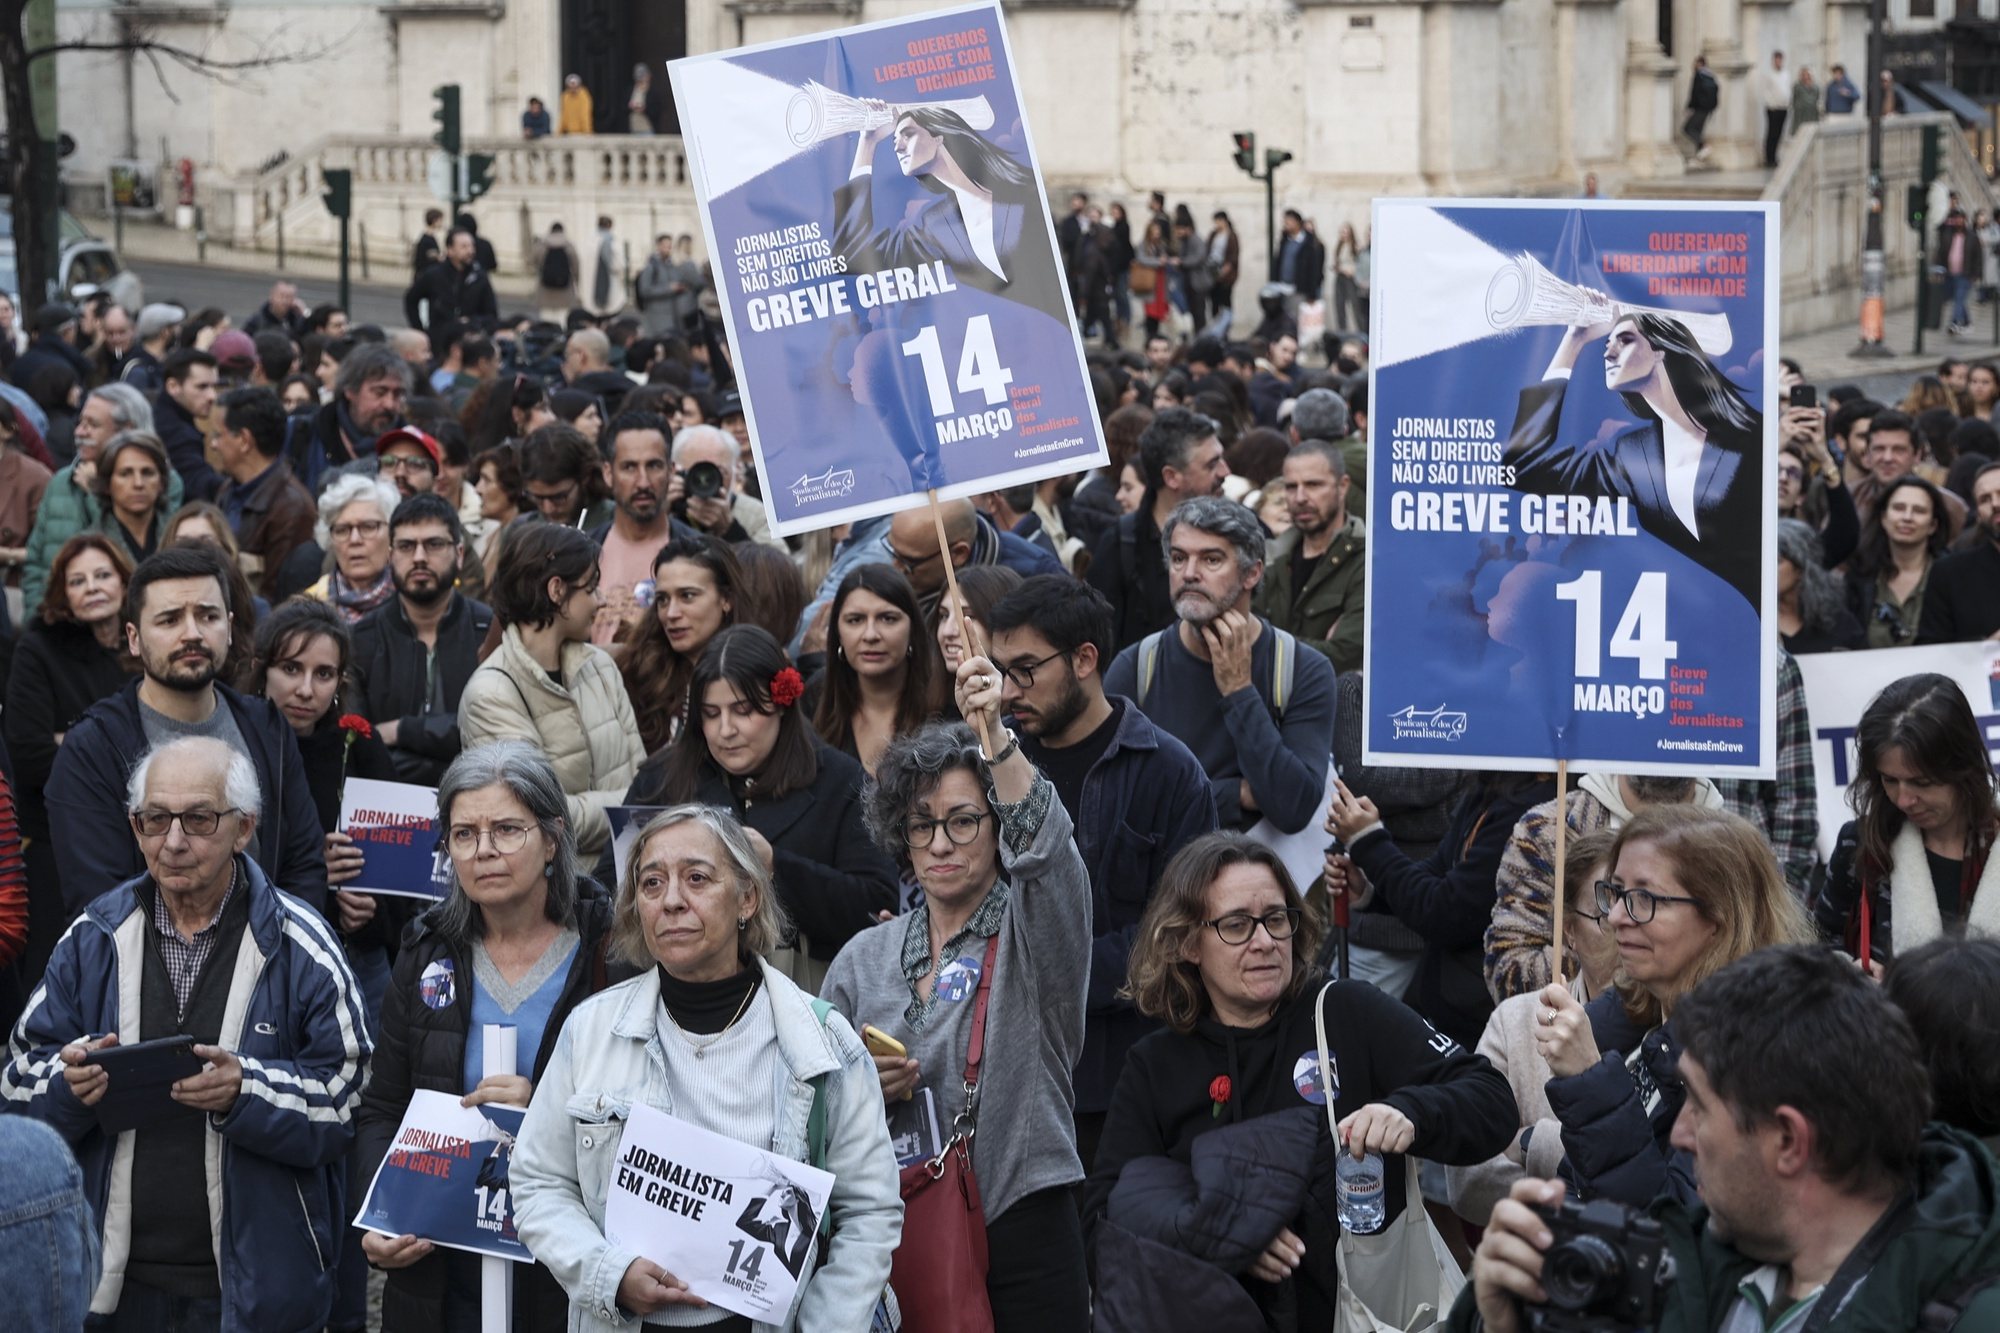 Jornalistas de vários órgãos de comunicação social protestam no Largo do Camões, em Lisboa, 14 de março de 2024. O Sindicato dos Jornalistas (SJ) agendou uma greve geral para este dia, a primeira em mais de 40 anos (a última foi em 1982), contra os baixos salários, precariedade e degradação das condições de trabalho do setor. CARLOS M. ALMEIDA/LUSA